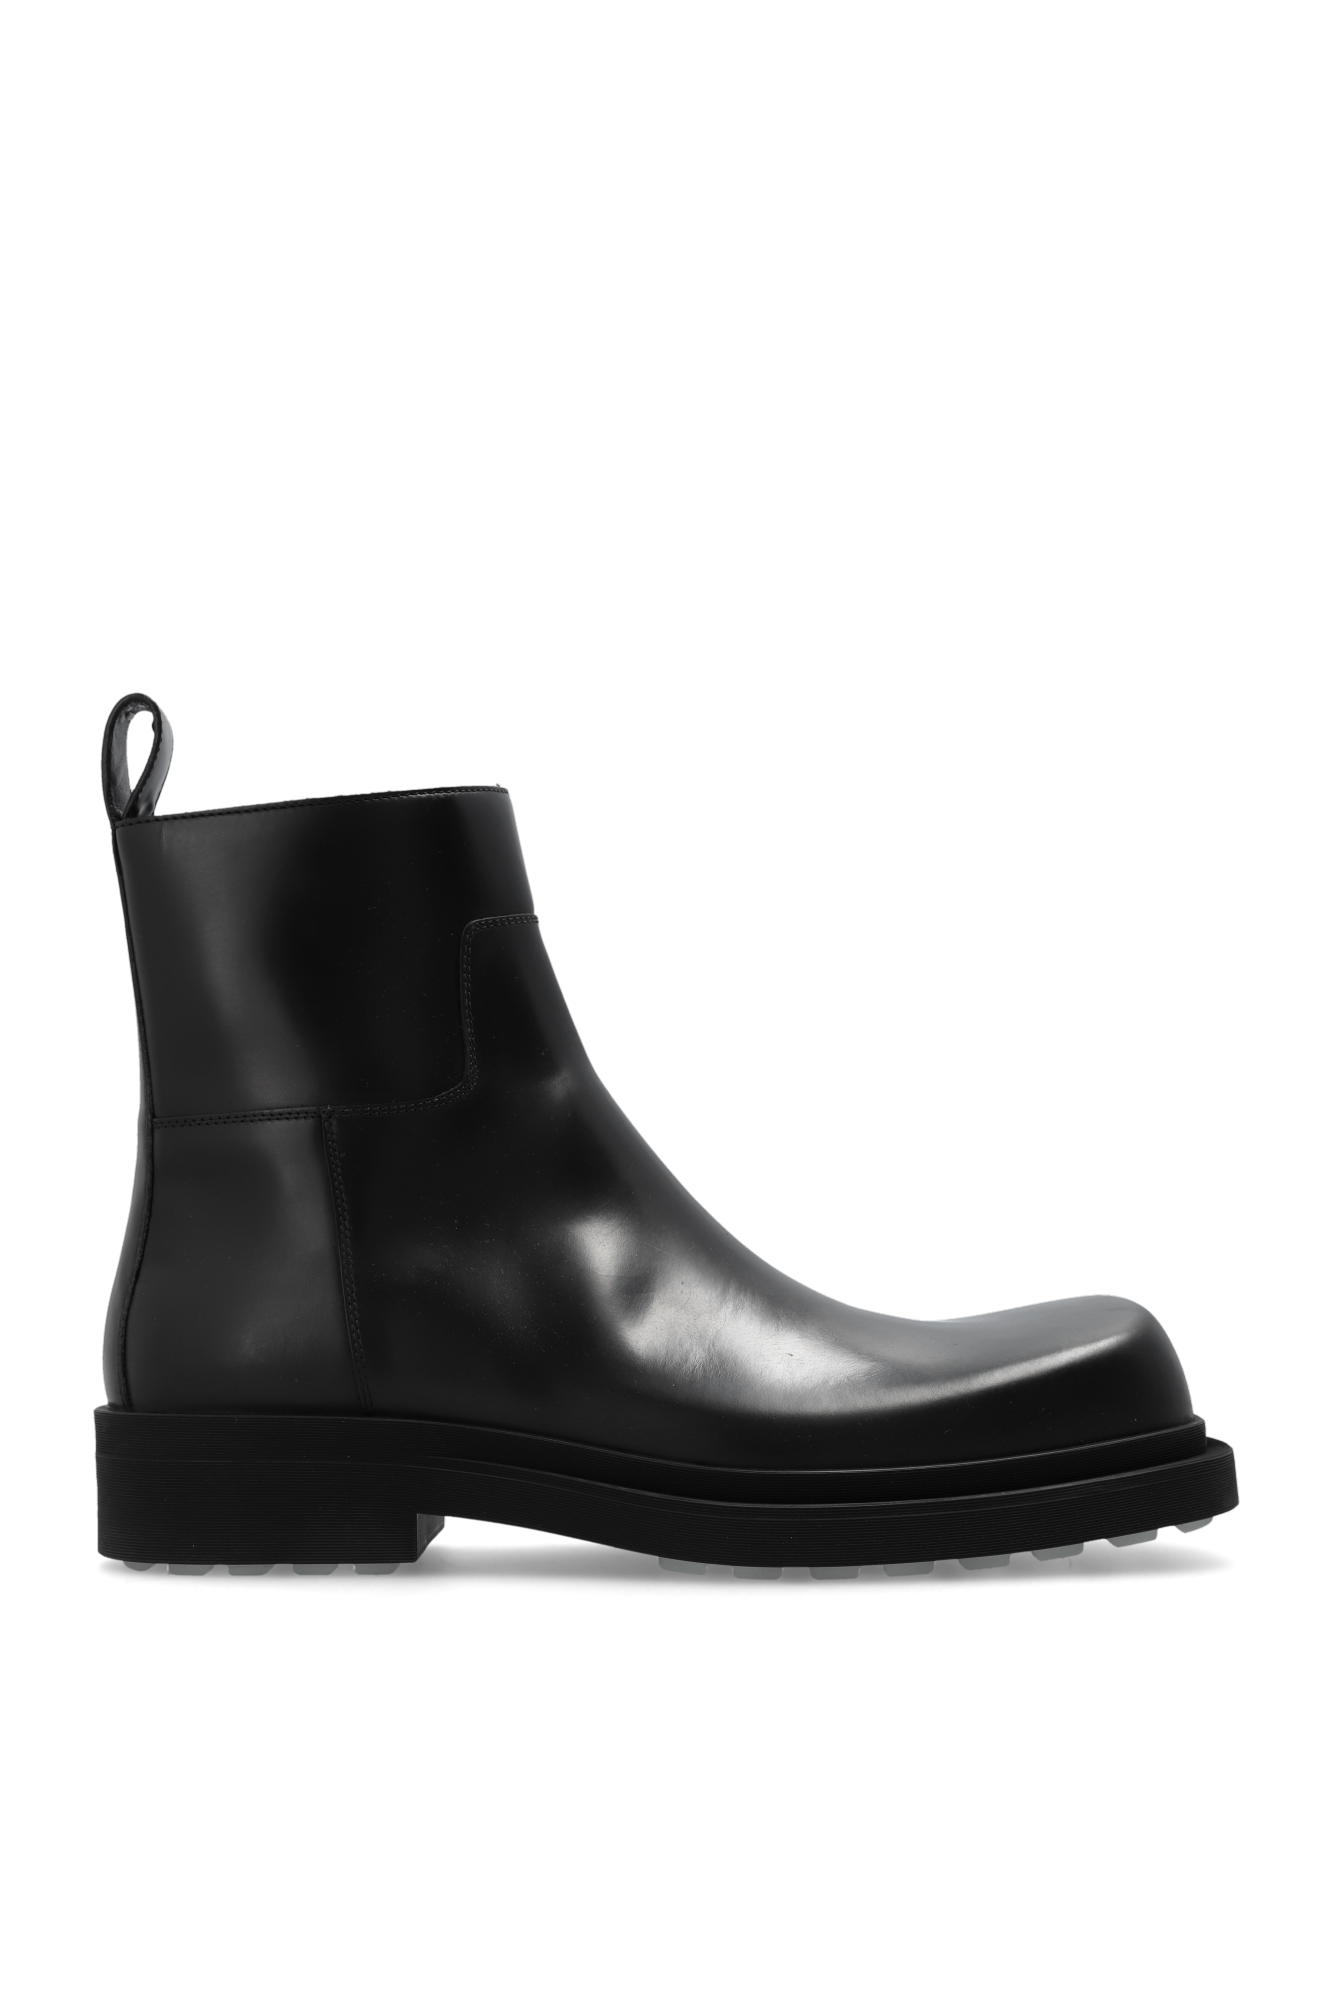 Bottega Veneta ‘Ben’ boots